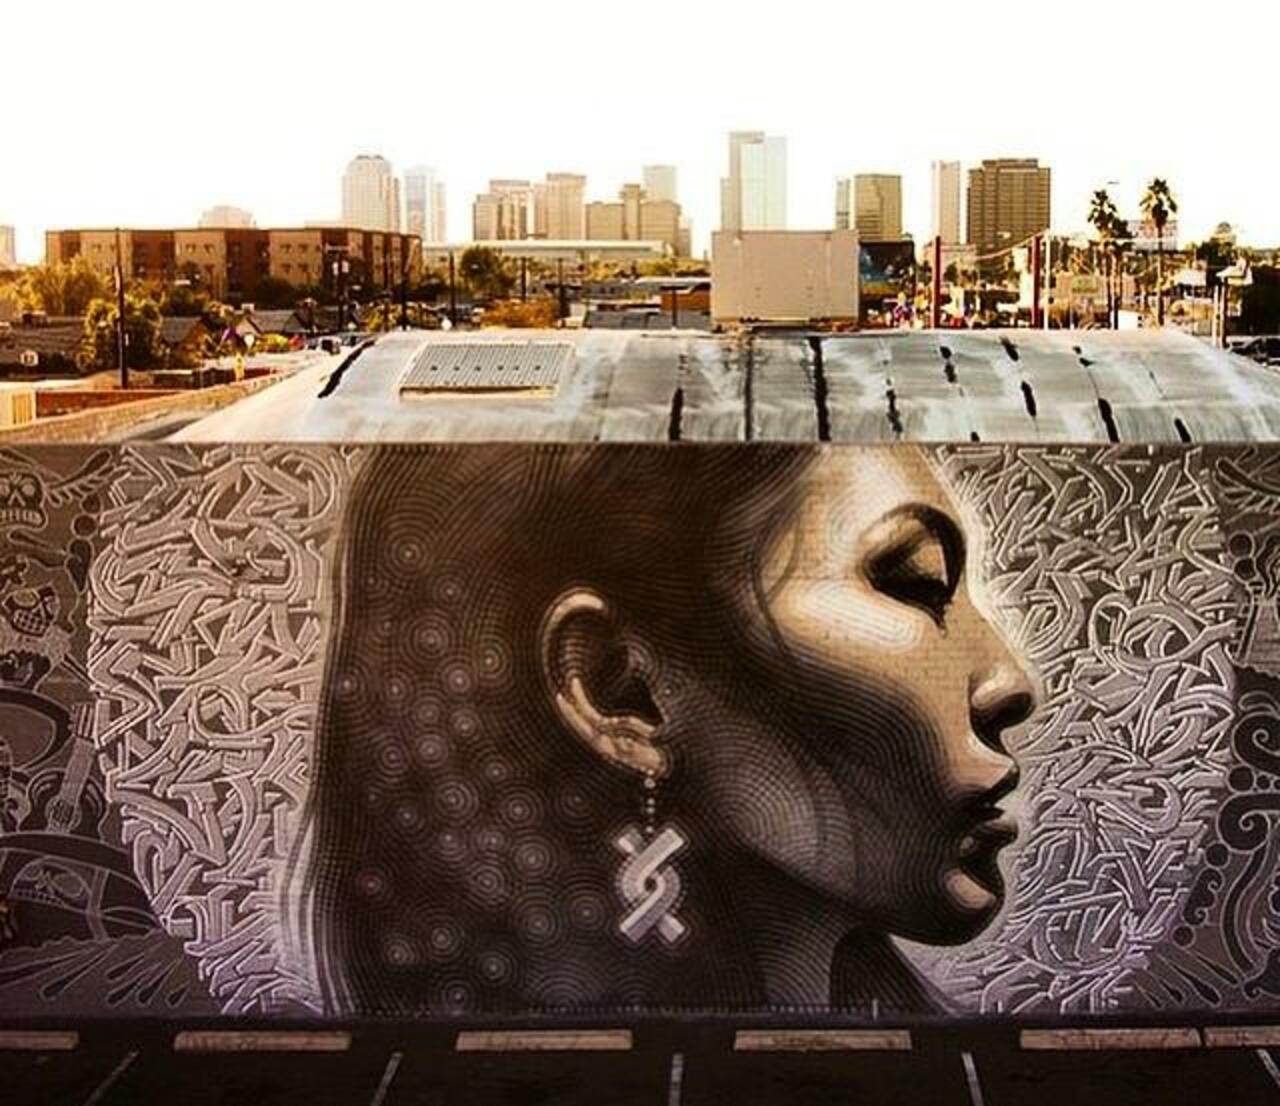 Latest Street Art work by El Mac in Phoenix, Arizona

#art #mural #graffiti #streetart http://t.co/aGiJIEf7ay